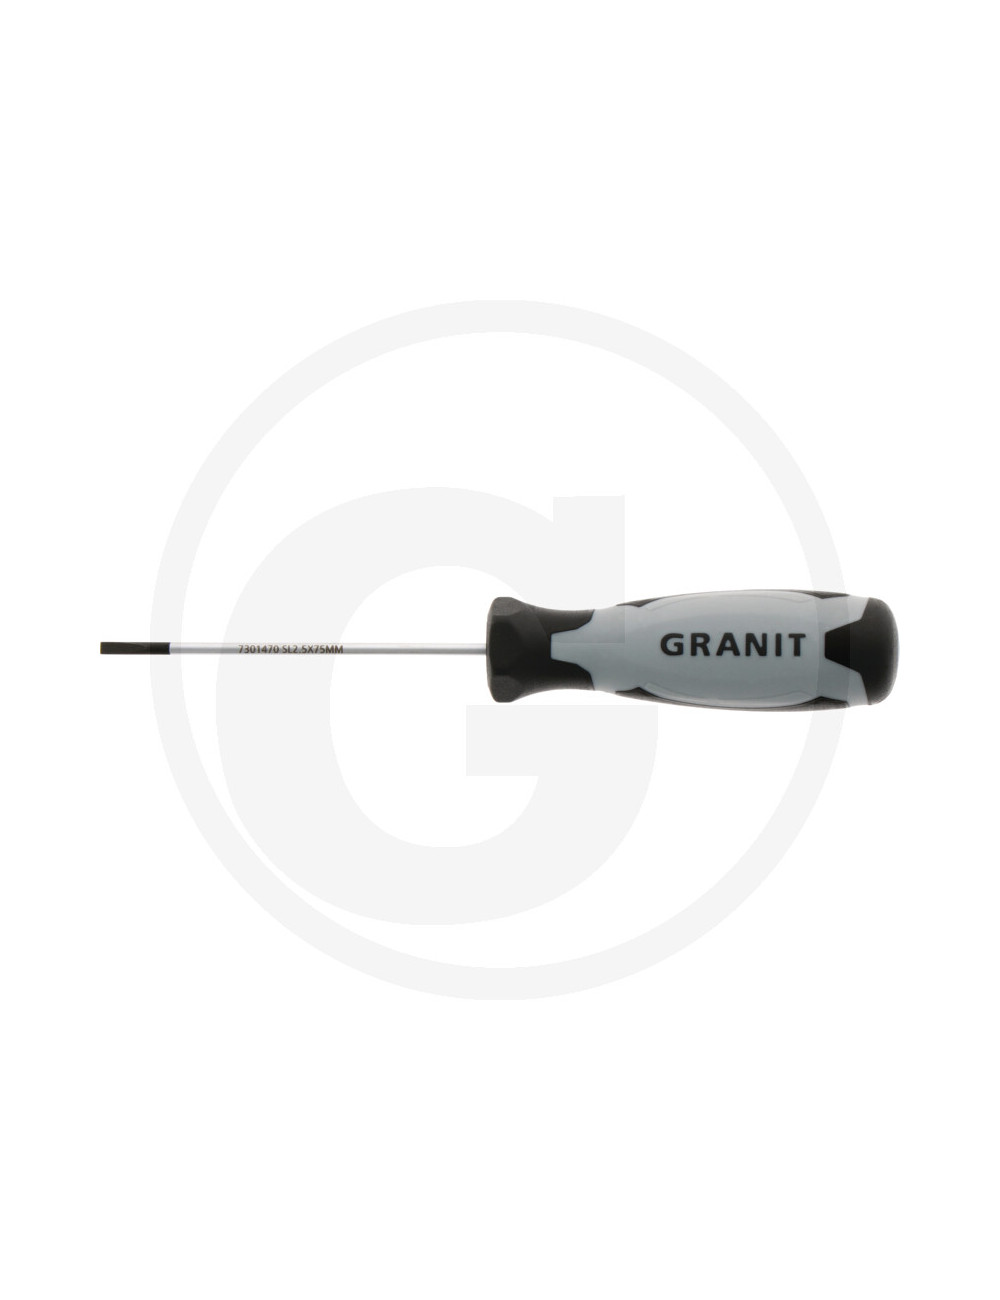 Cacciavite a intaglio, 2,5 mm Granit Black Edition cod 7301470